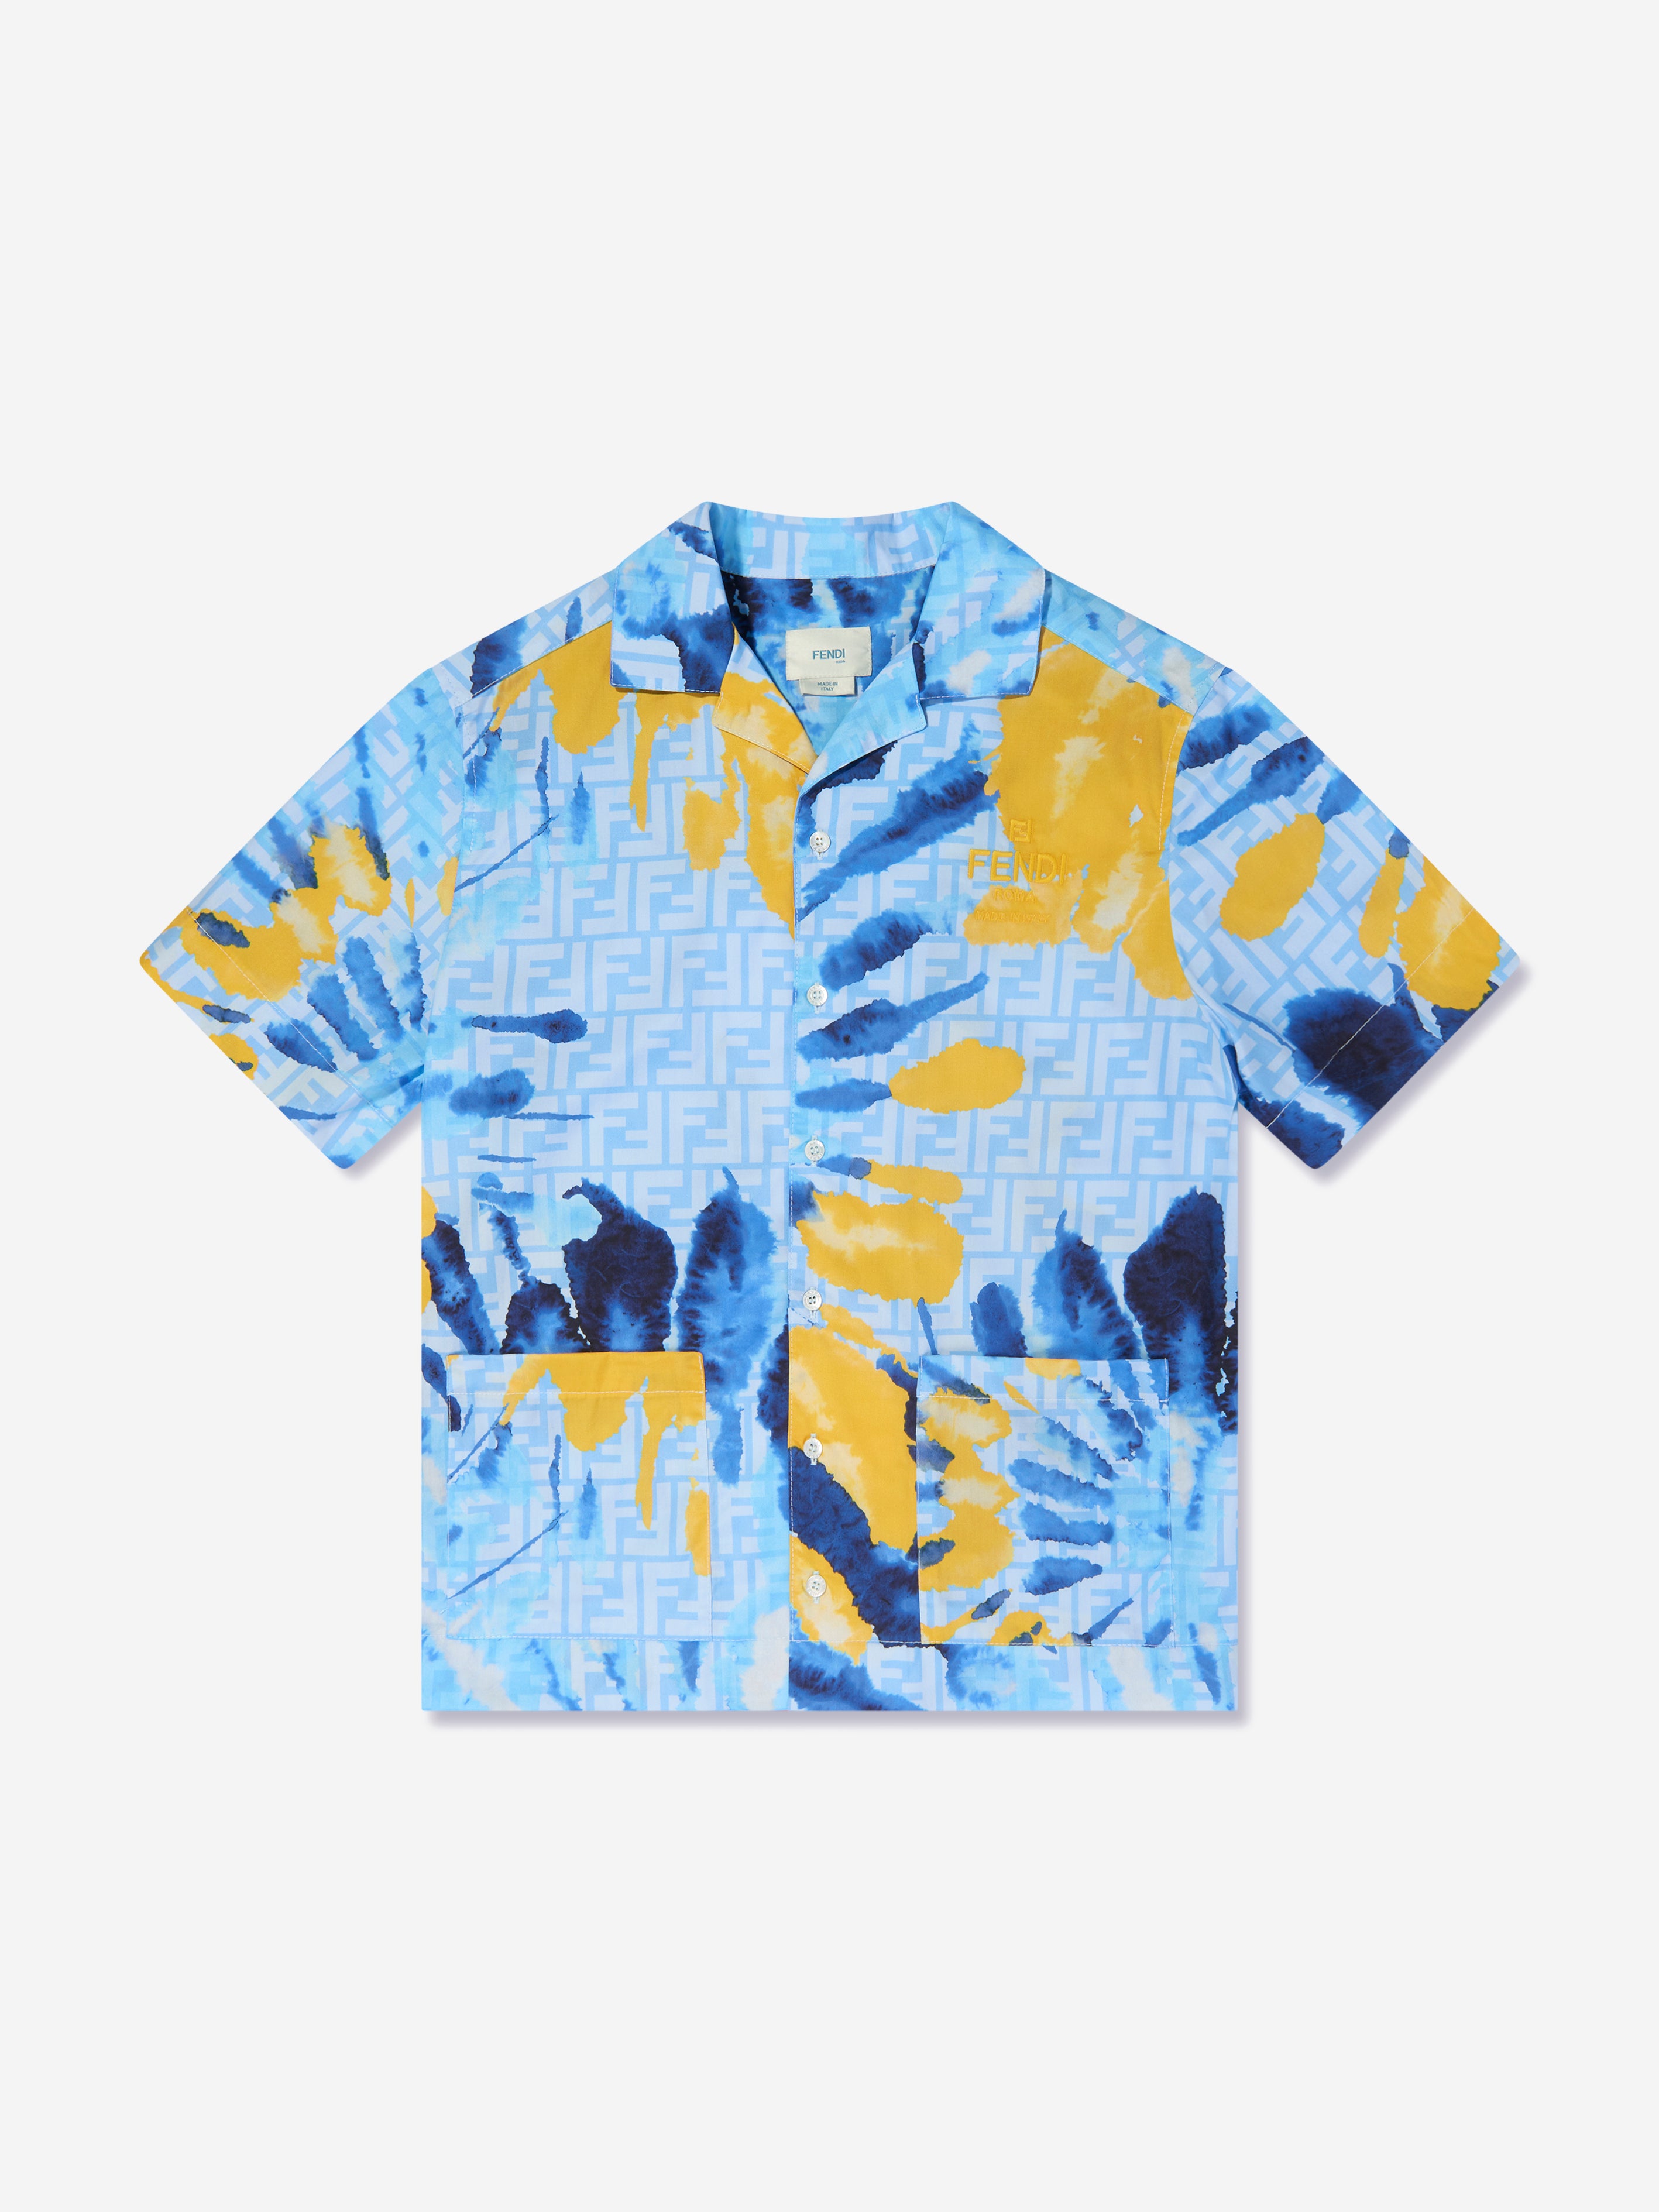 Fendi Kids' Boys Tie Dye Shirt In Blue